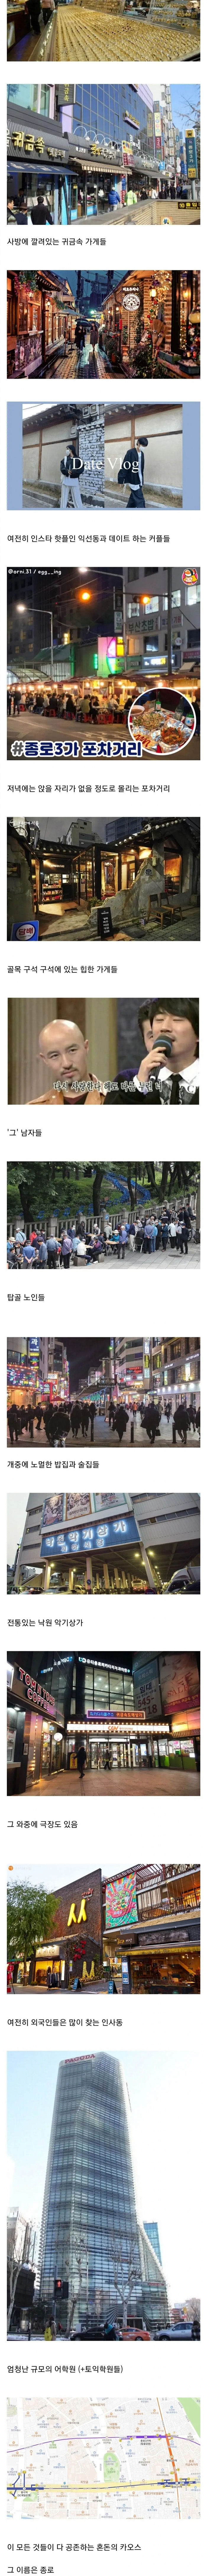 1 한국에서 가장 혼돈스러운 동네.jpg